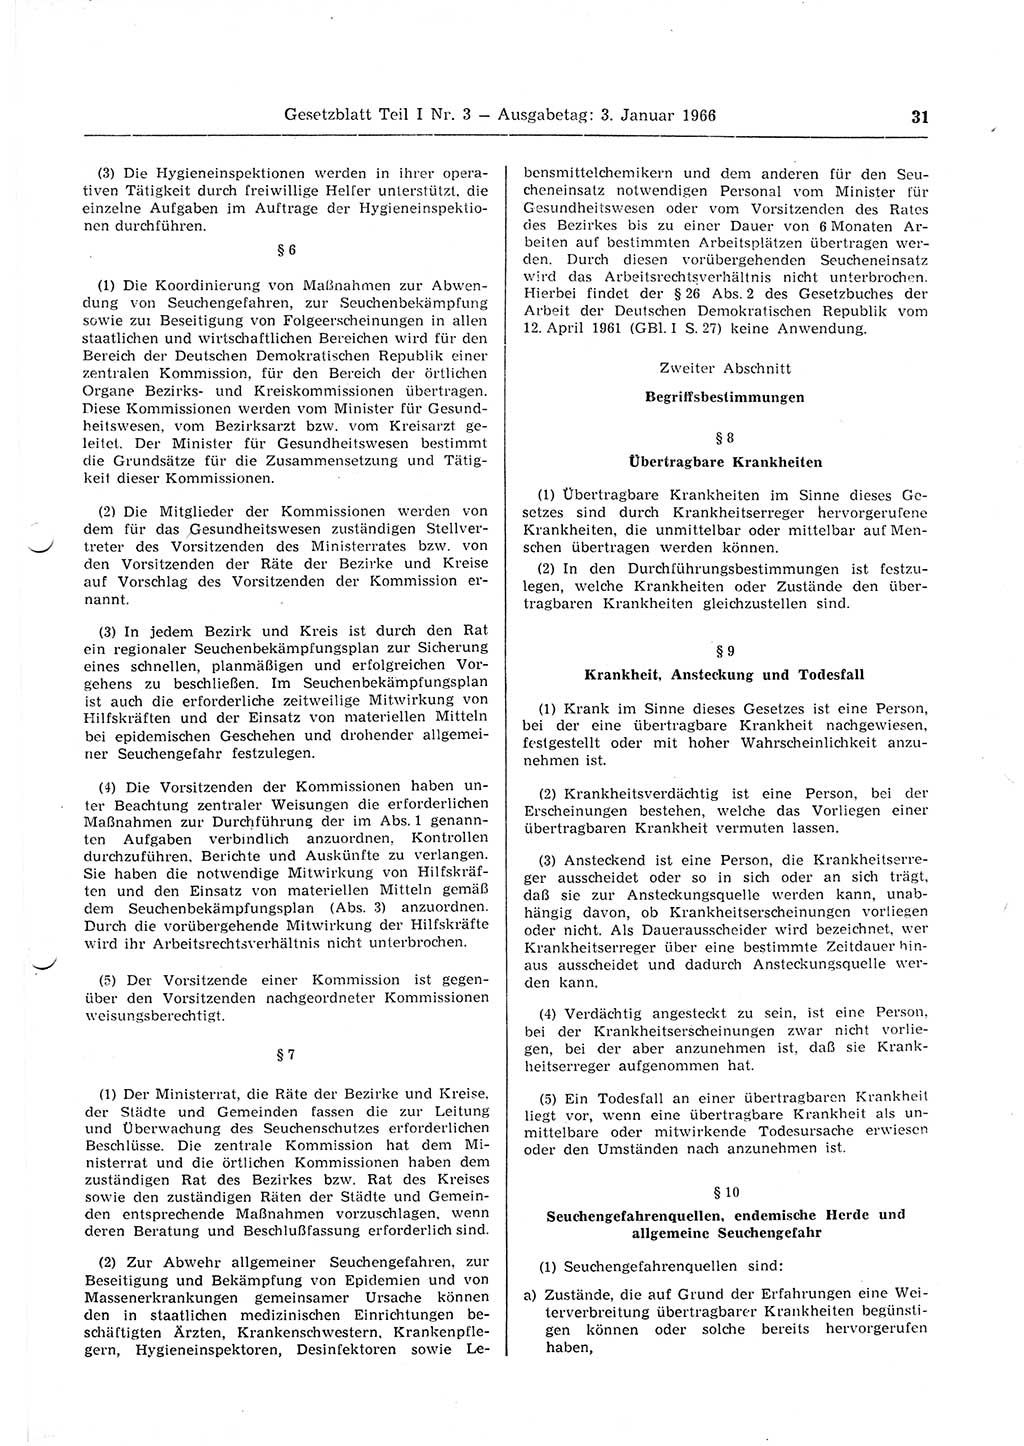 Gesetzblatt (GBl.) der Deutschen Demokratischen Republik (DDR) Teil Ⅰ 1966, Seite 31 (GBl. DDR Ⅰ 1966, S. 31)